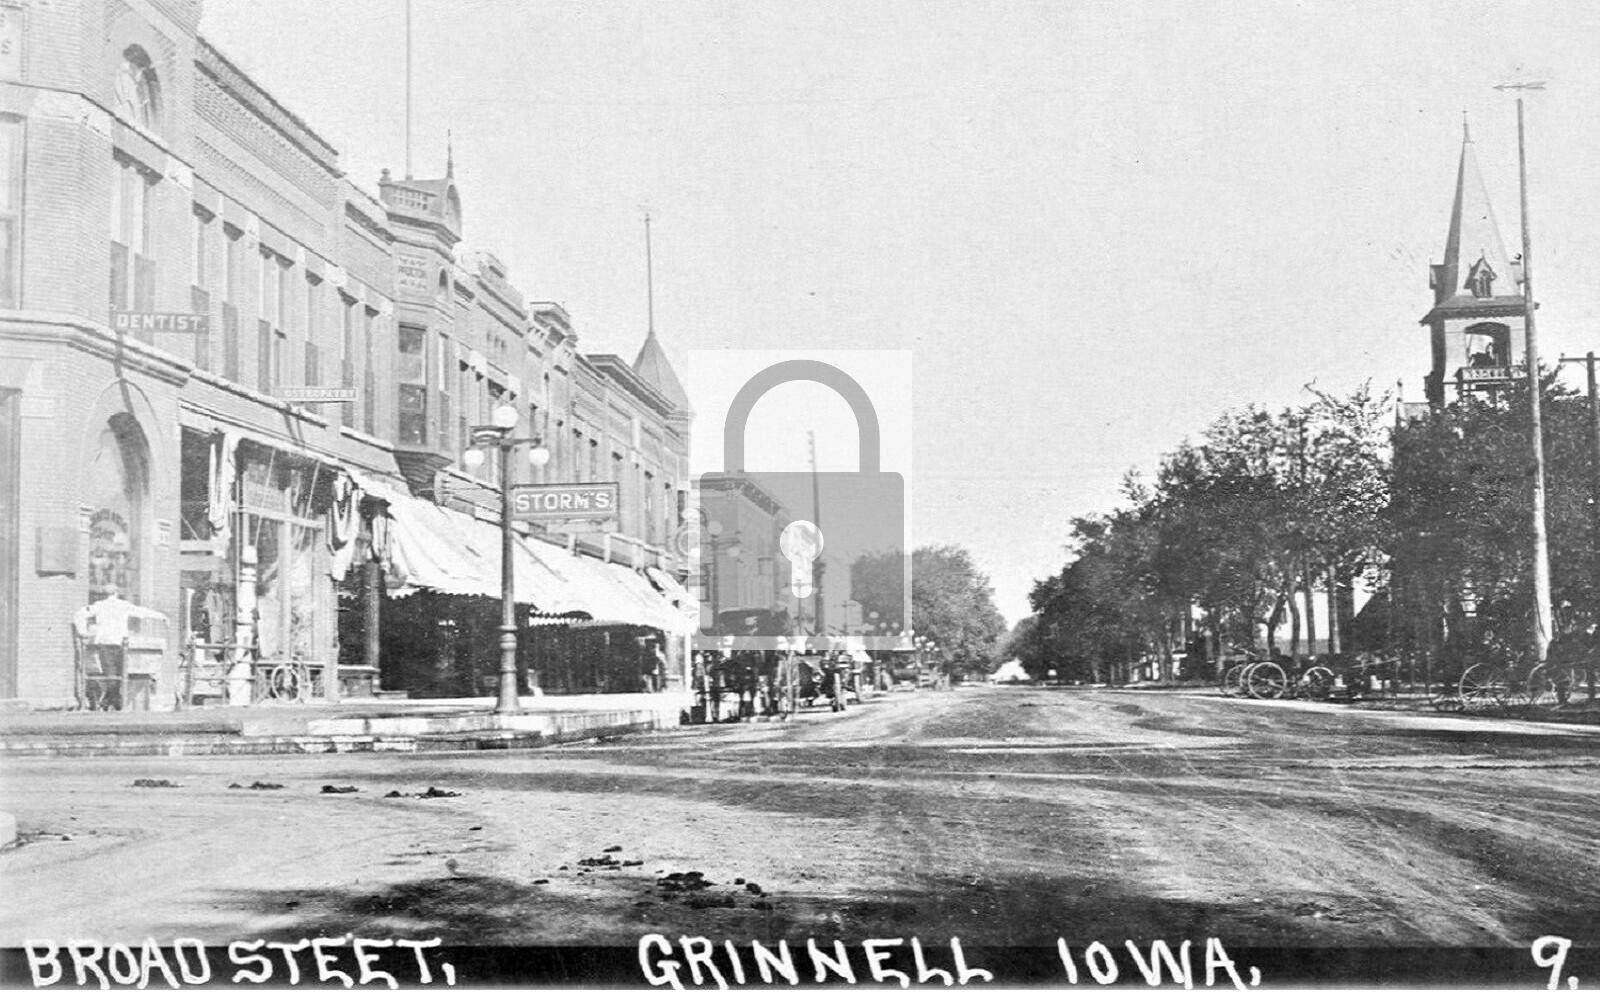 Broad Street View Dentist Office Grinnell Iowa IA - 8x10 Reprint